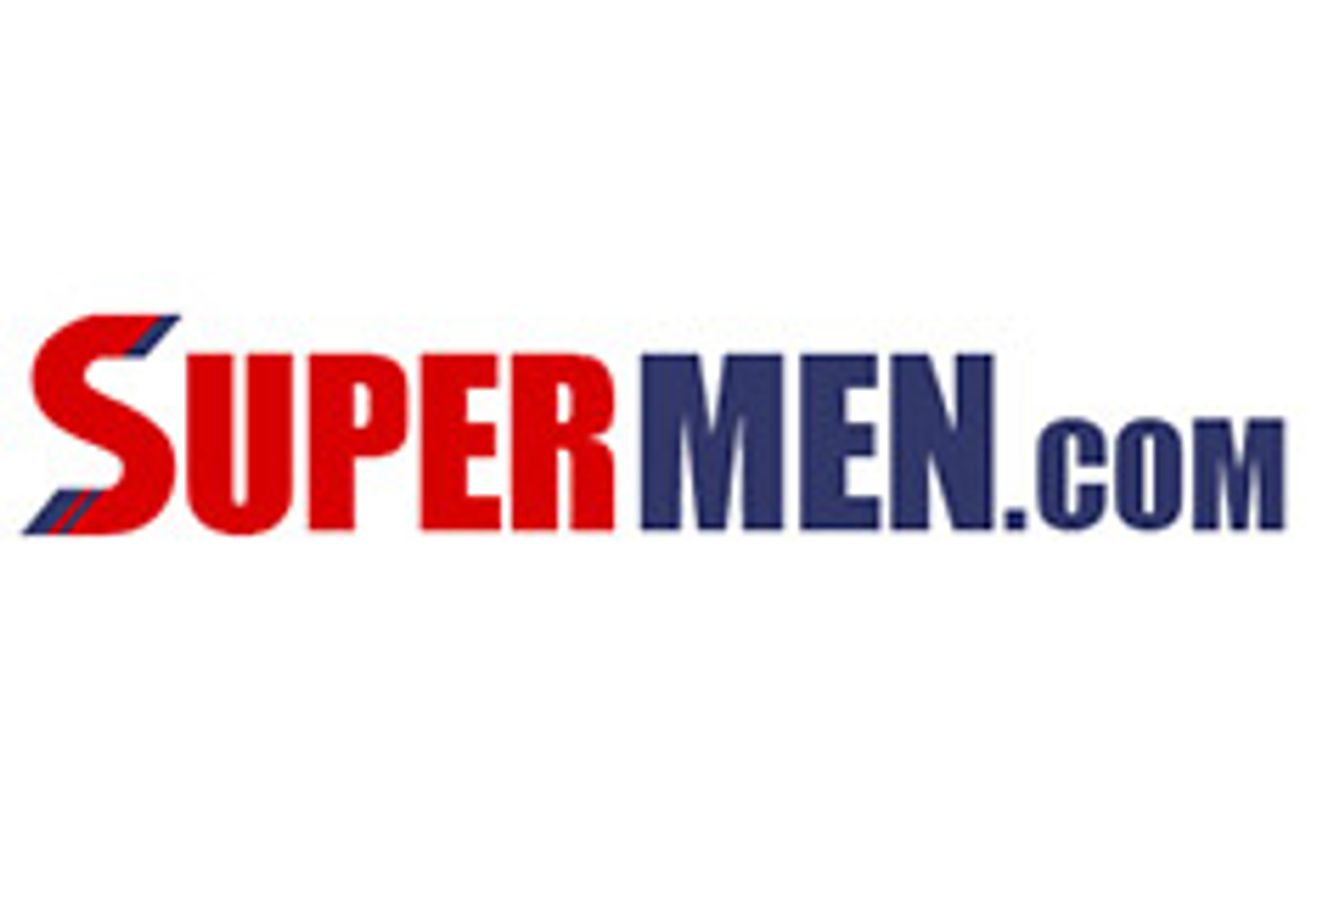 Supermen.com